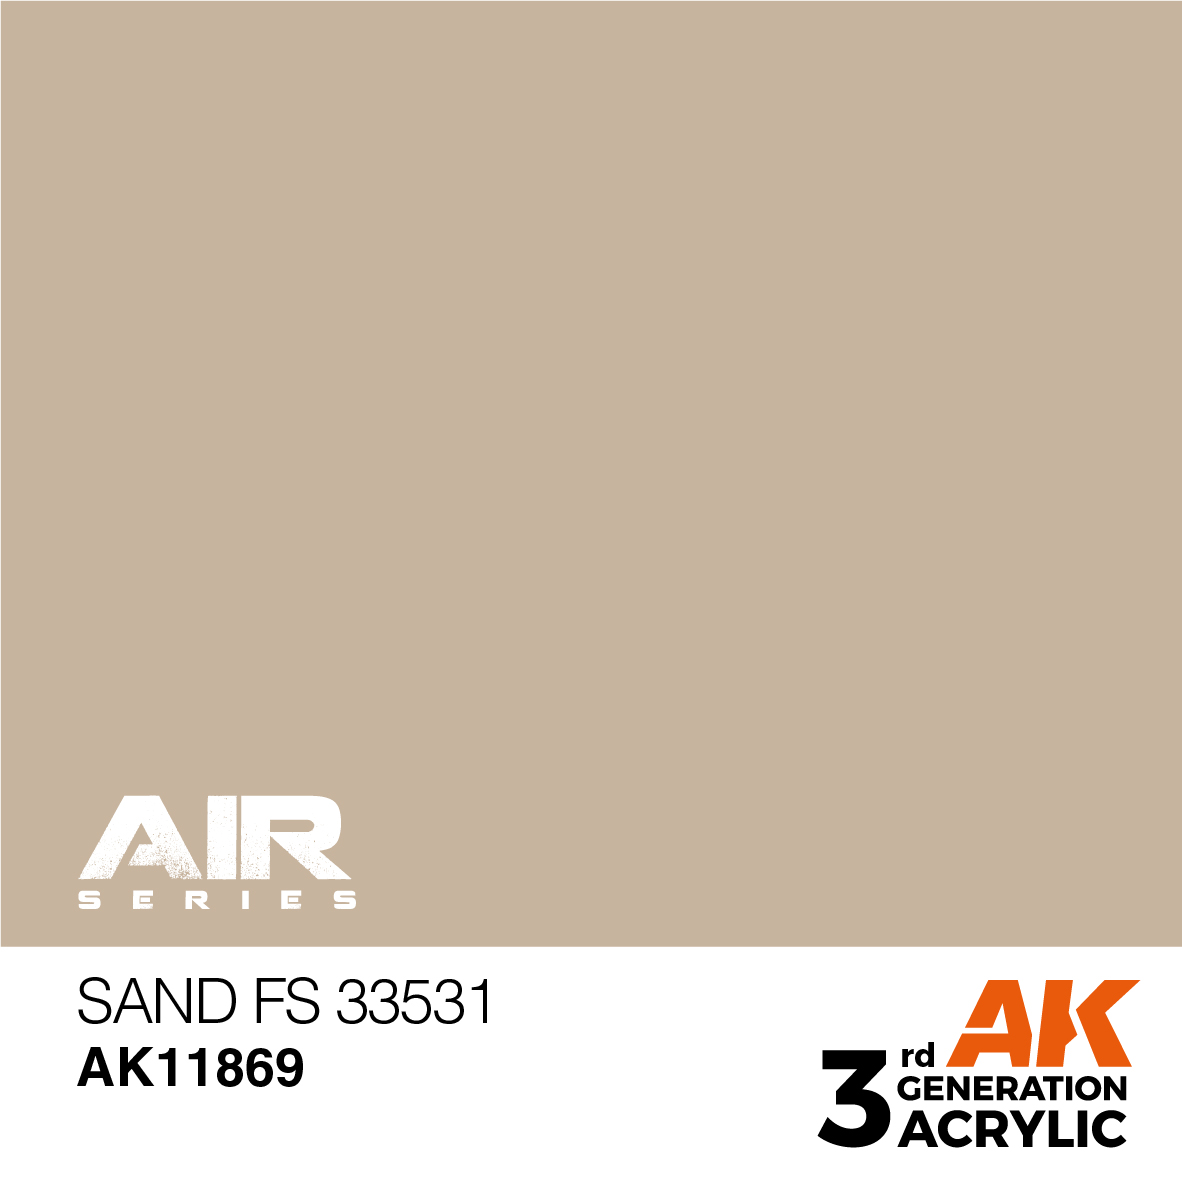 Sand FS 33531 – AIR